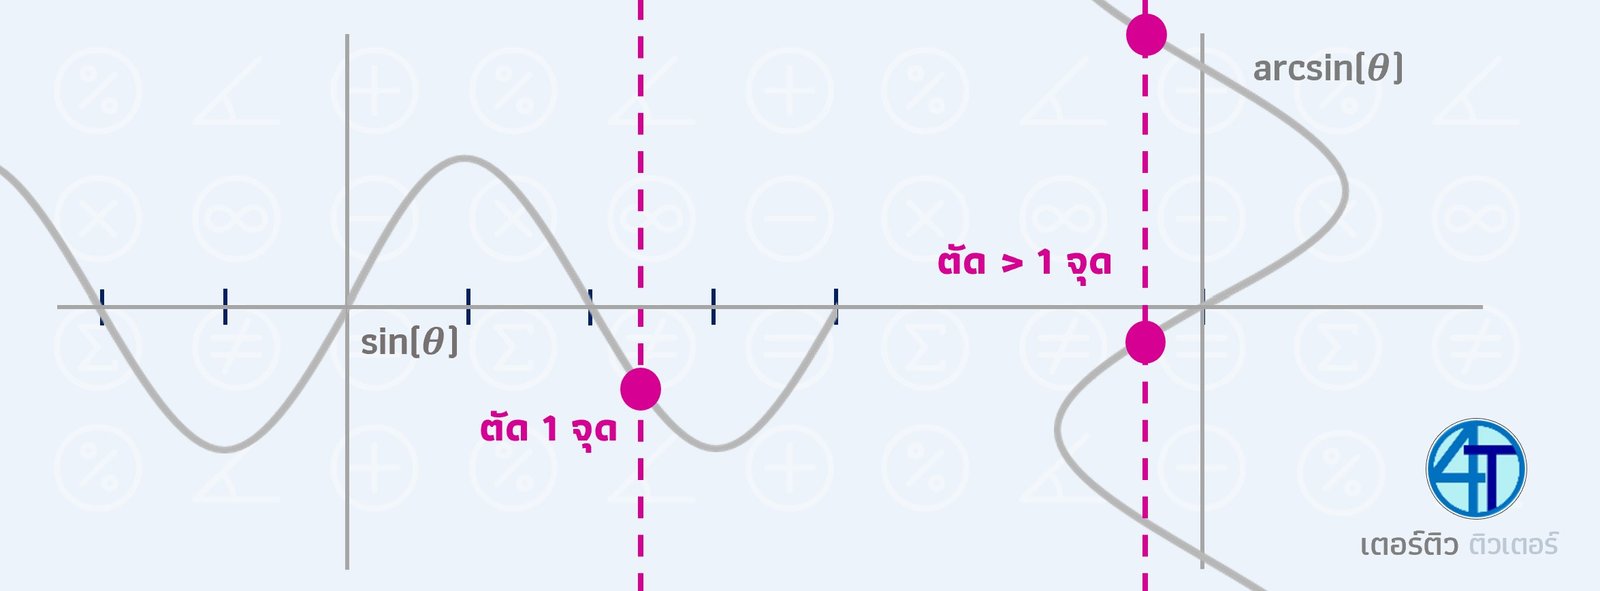 ฟังก์ชัน arcsin (ผกผันตรีโกณมิติ) การเช็คว่าเป็นฟังก์ชัน โดยลากเส้นตรงขนานแกน Y ตั้งฉากแกน X